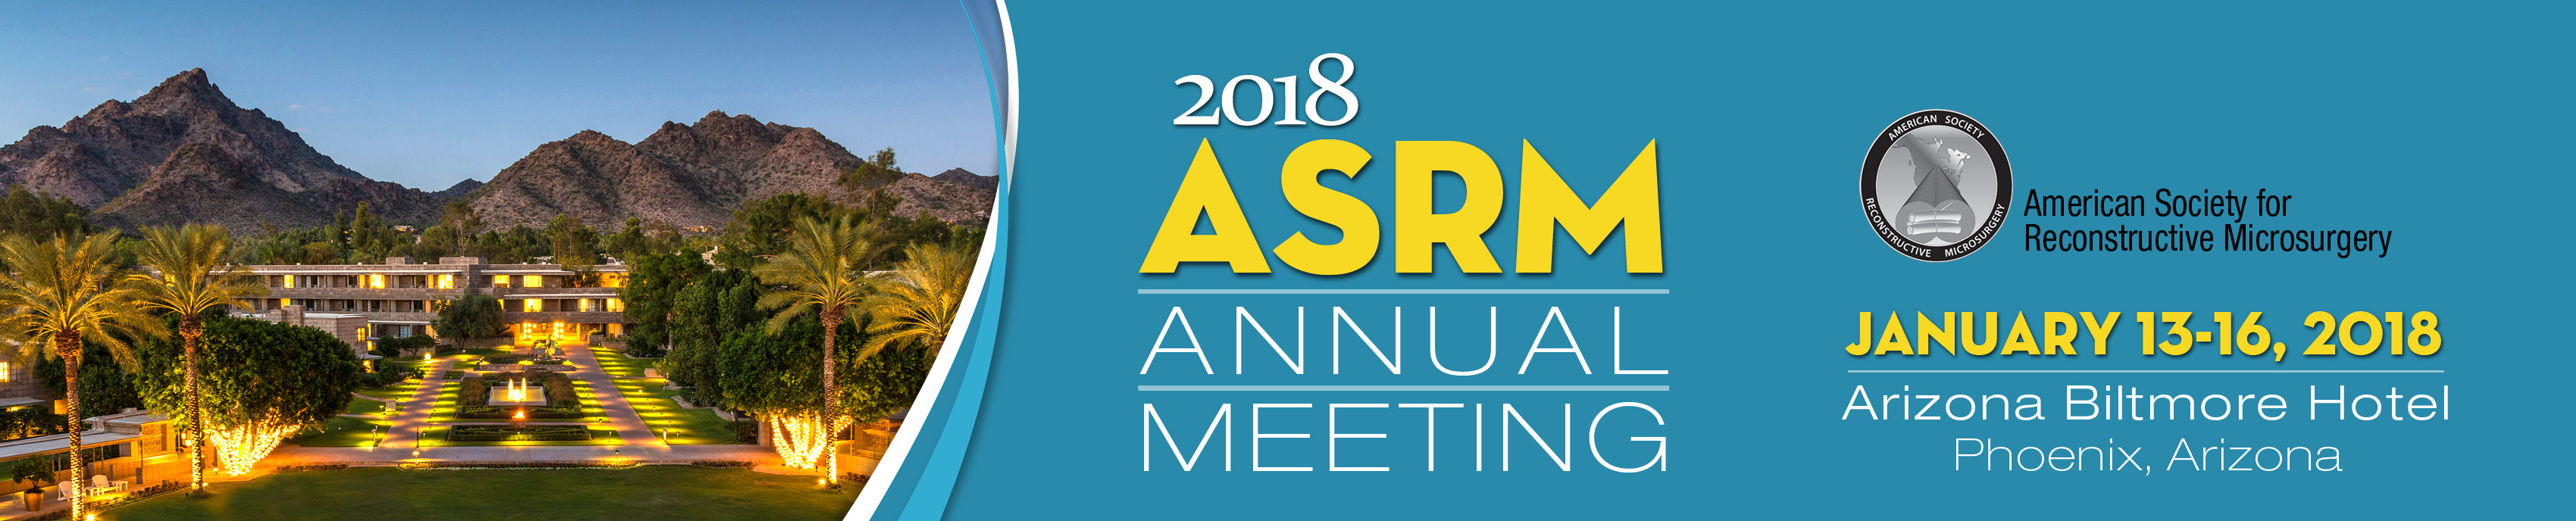 ASRM Annual Meeting 2018 Past ASRM Meetings ASRM/Microsurg